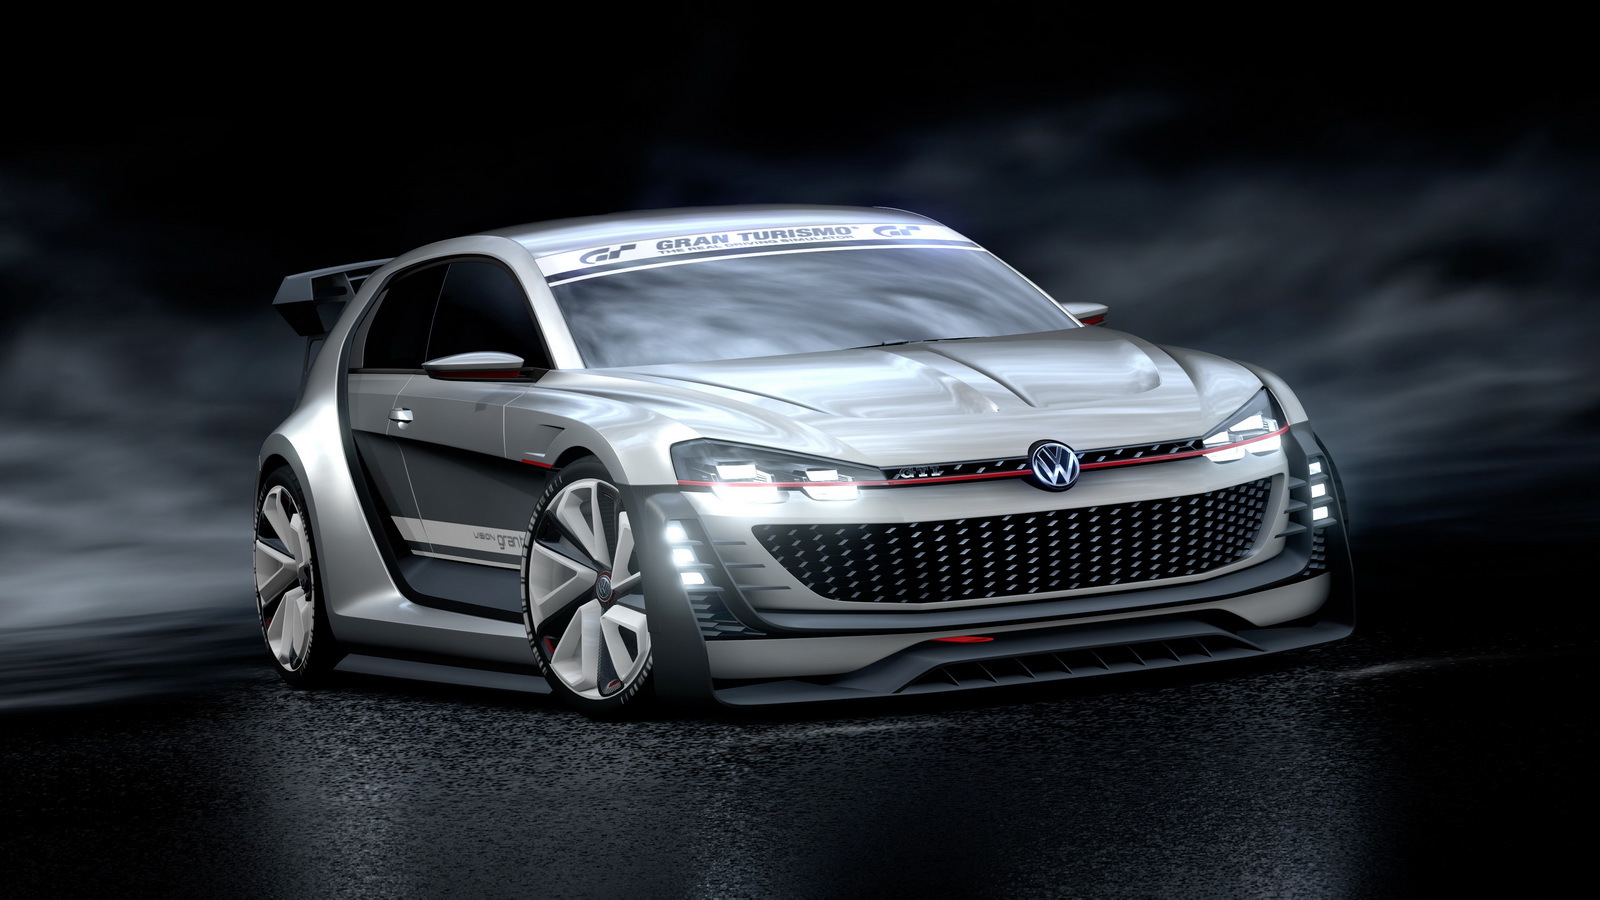 Volkswagen GTI Super Sport  Vision  Grand Turismo